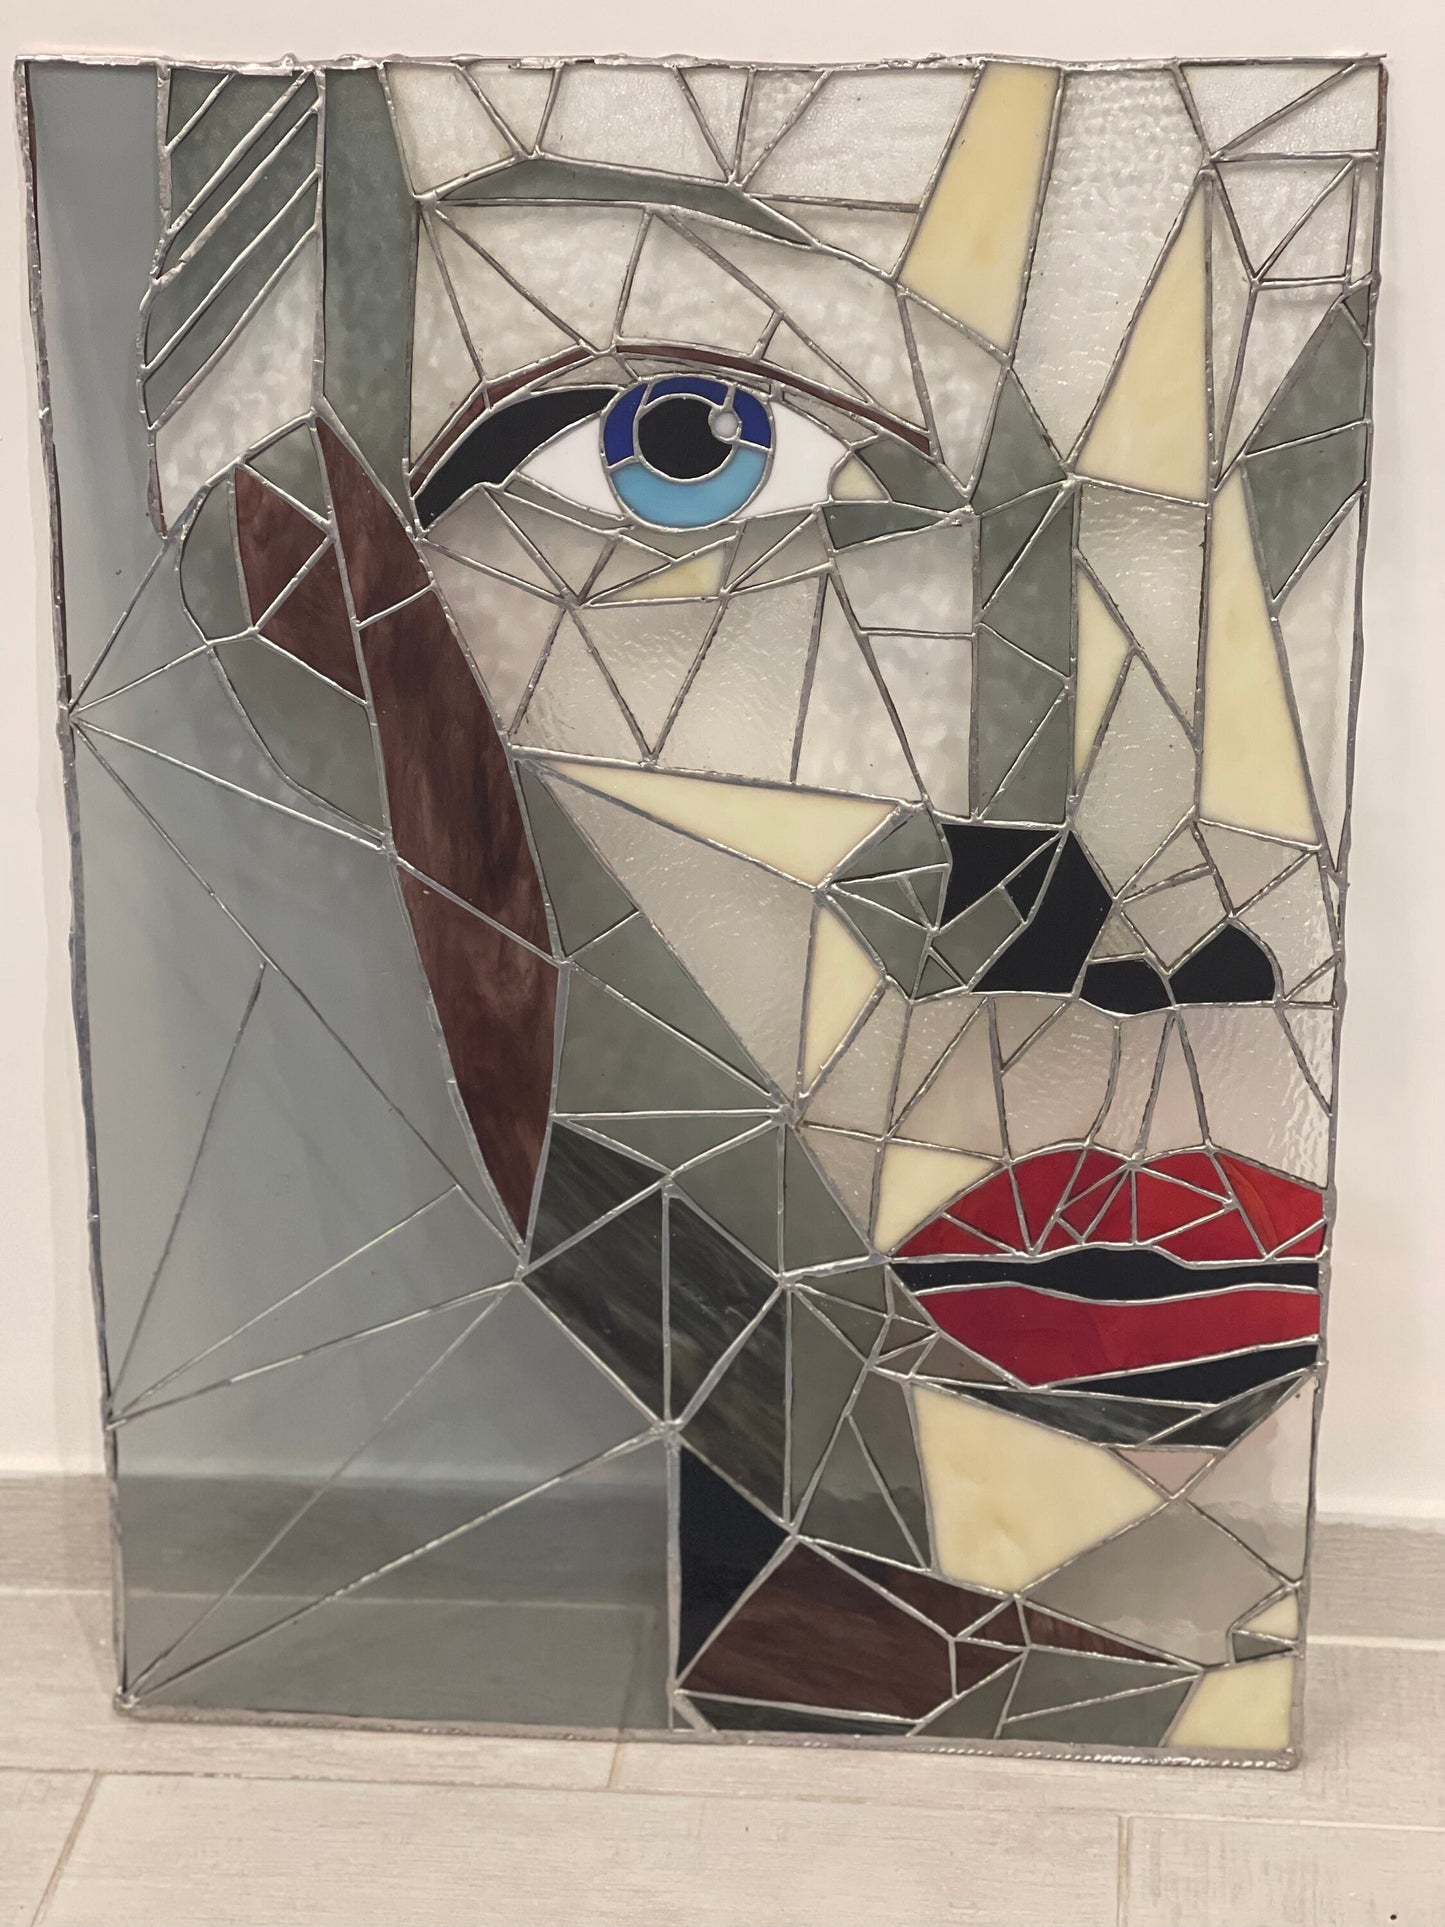 Retrato femenino de arte moderno en vidrio | Decoración del hogar única y moderna.